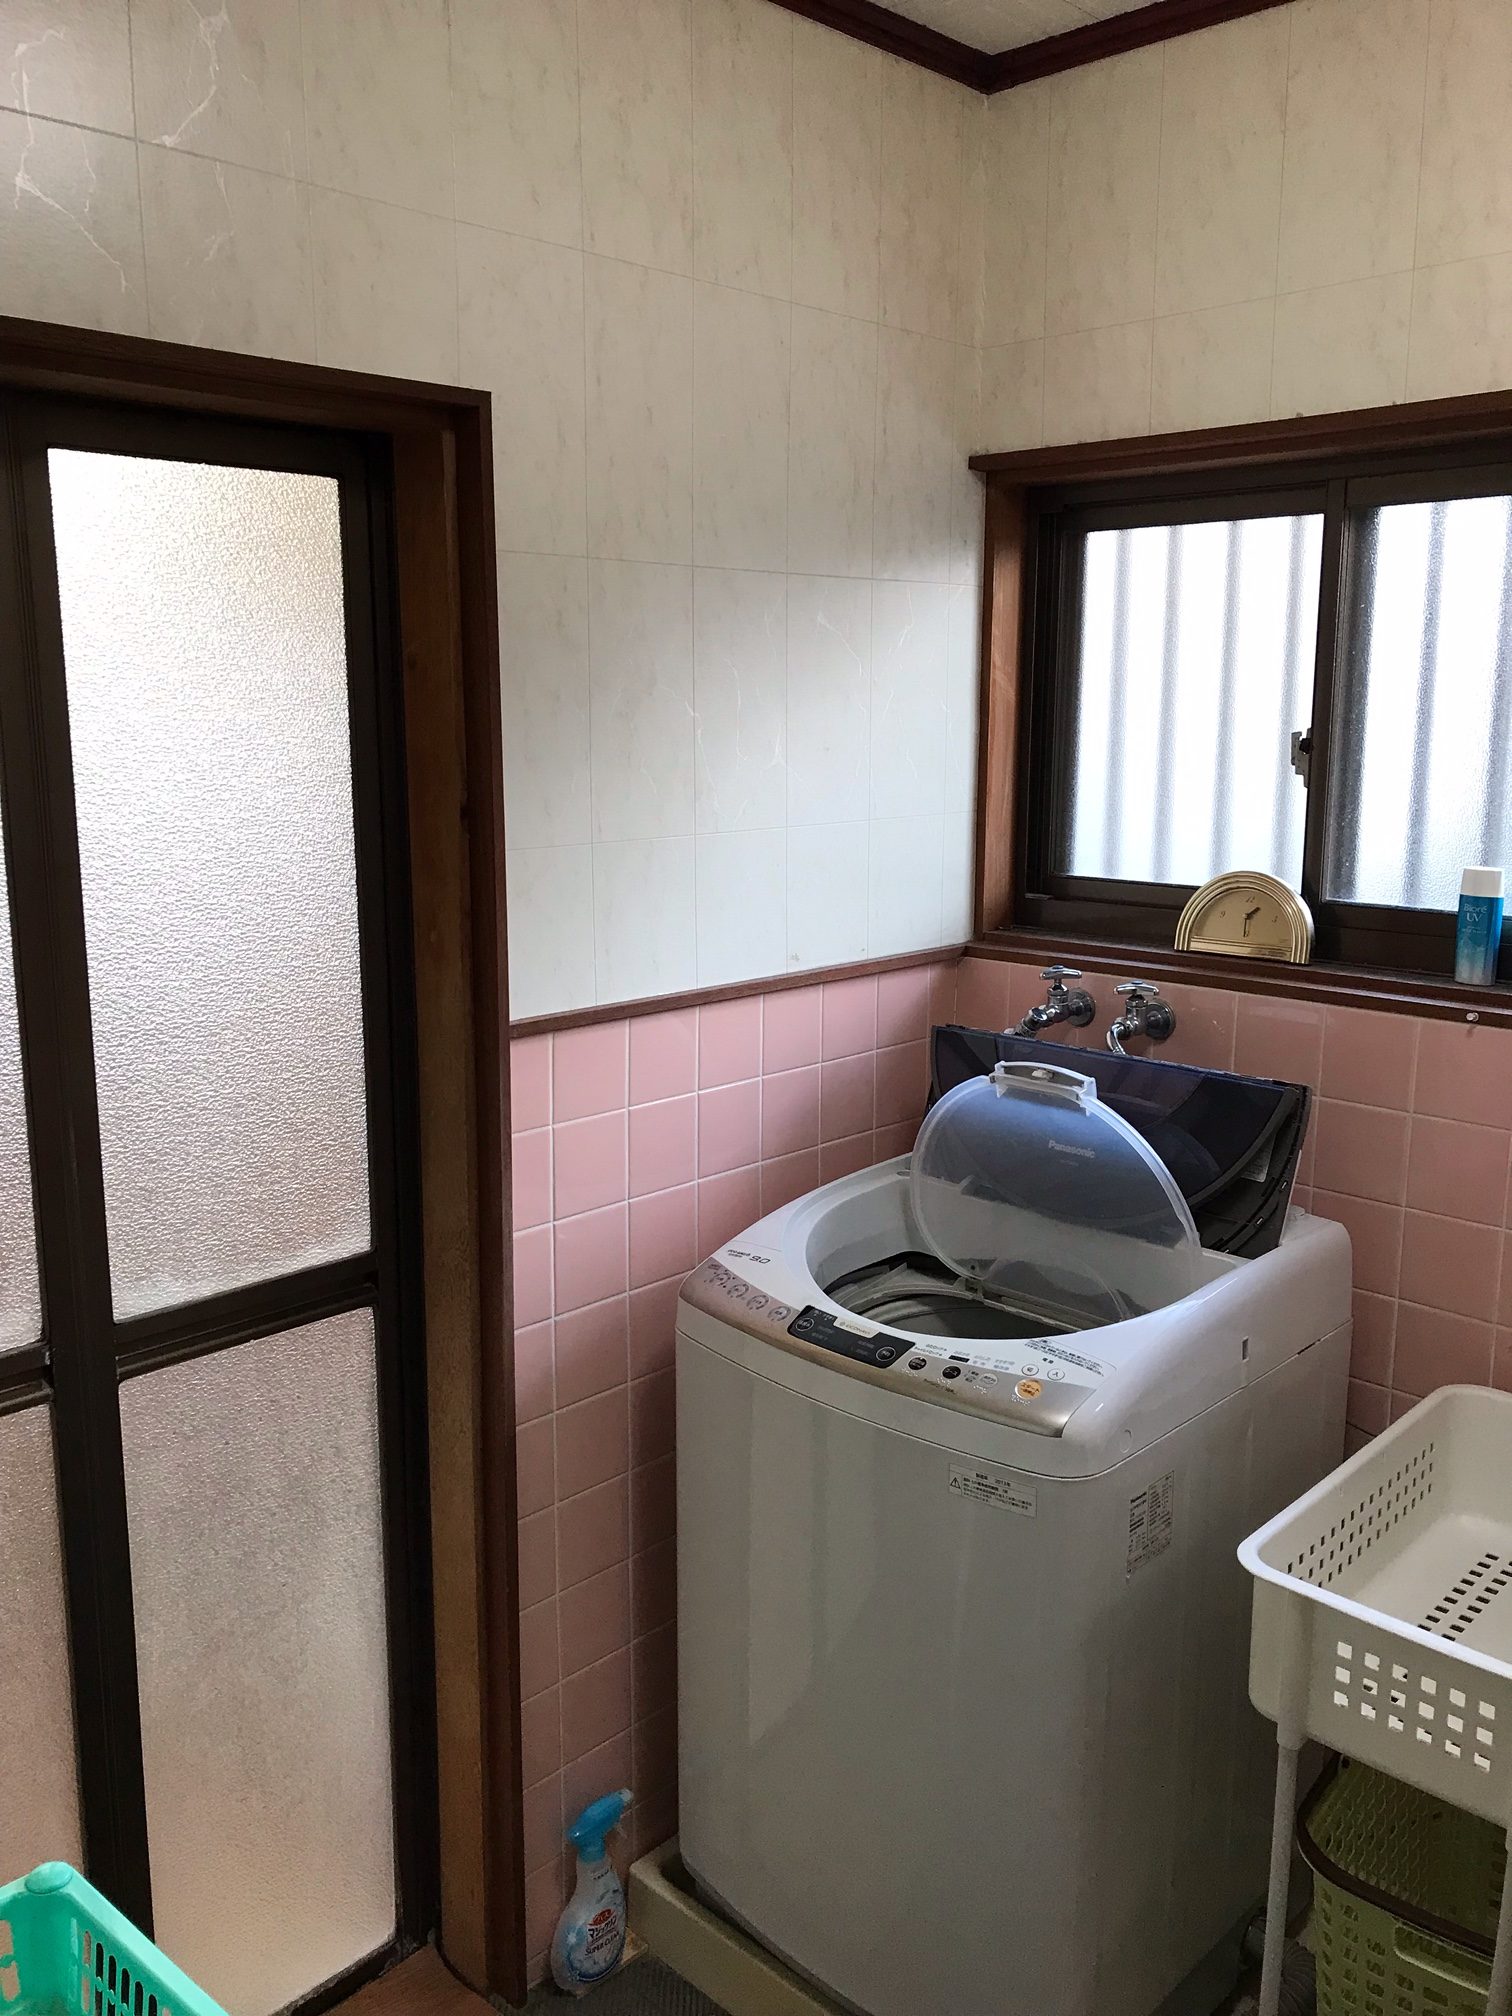 浴室・脱衣場・キッチン・トイレリフォーム